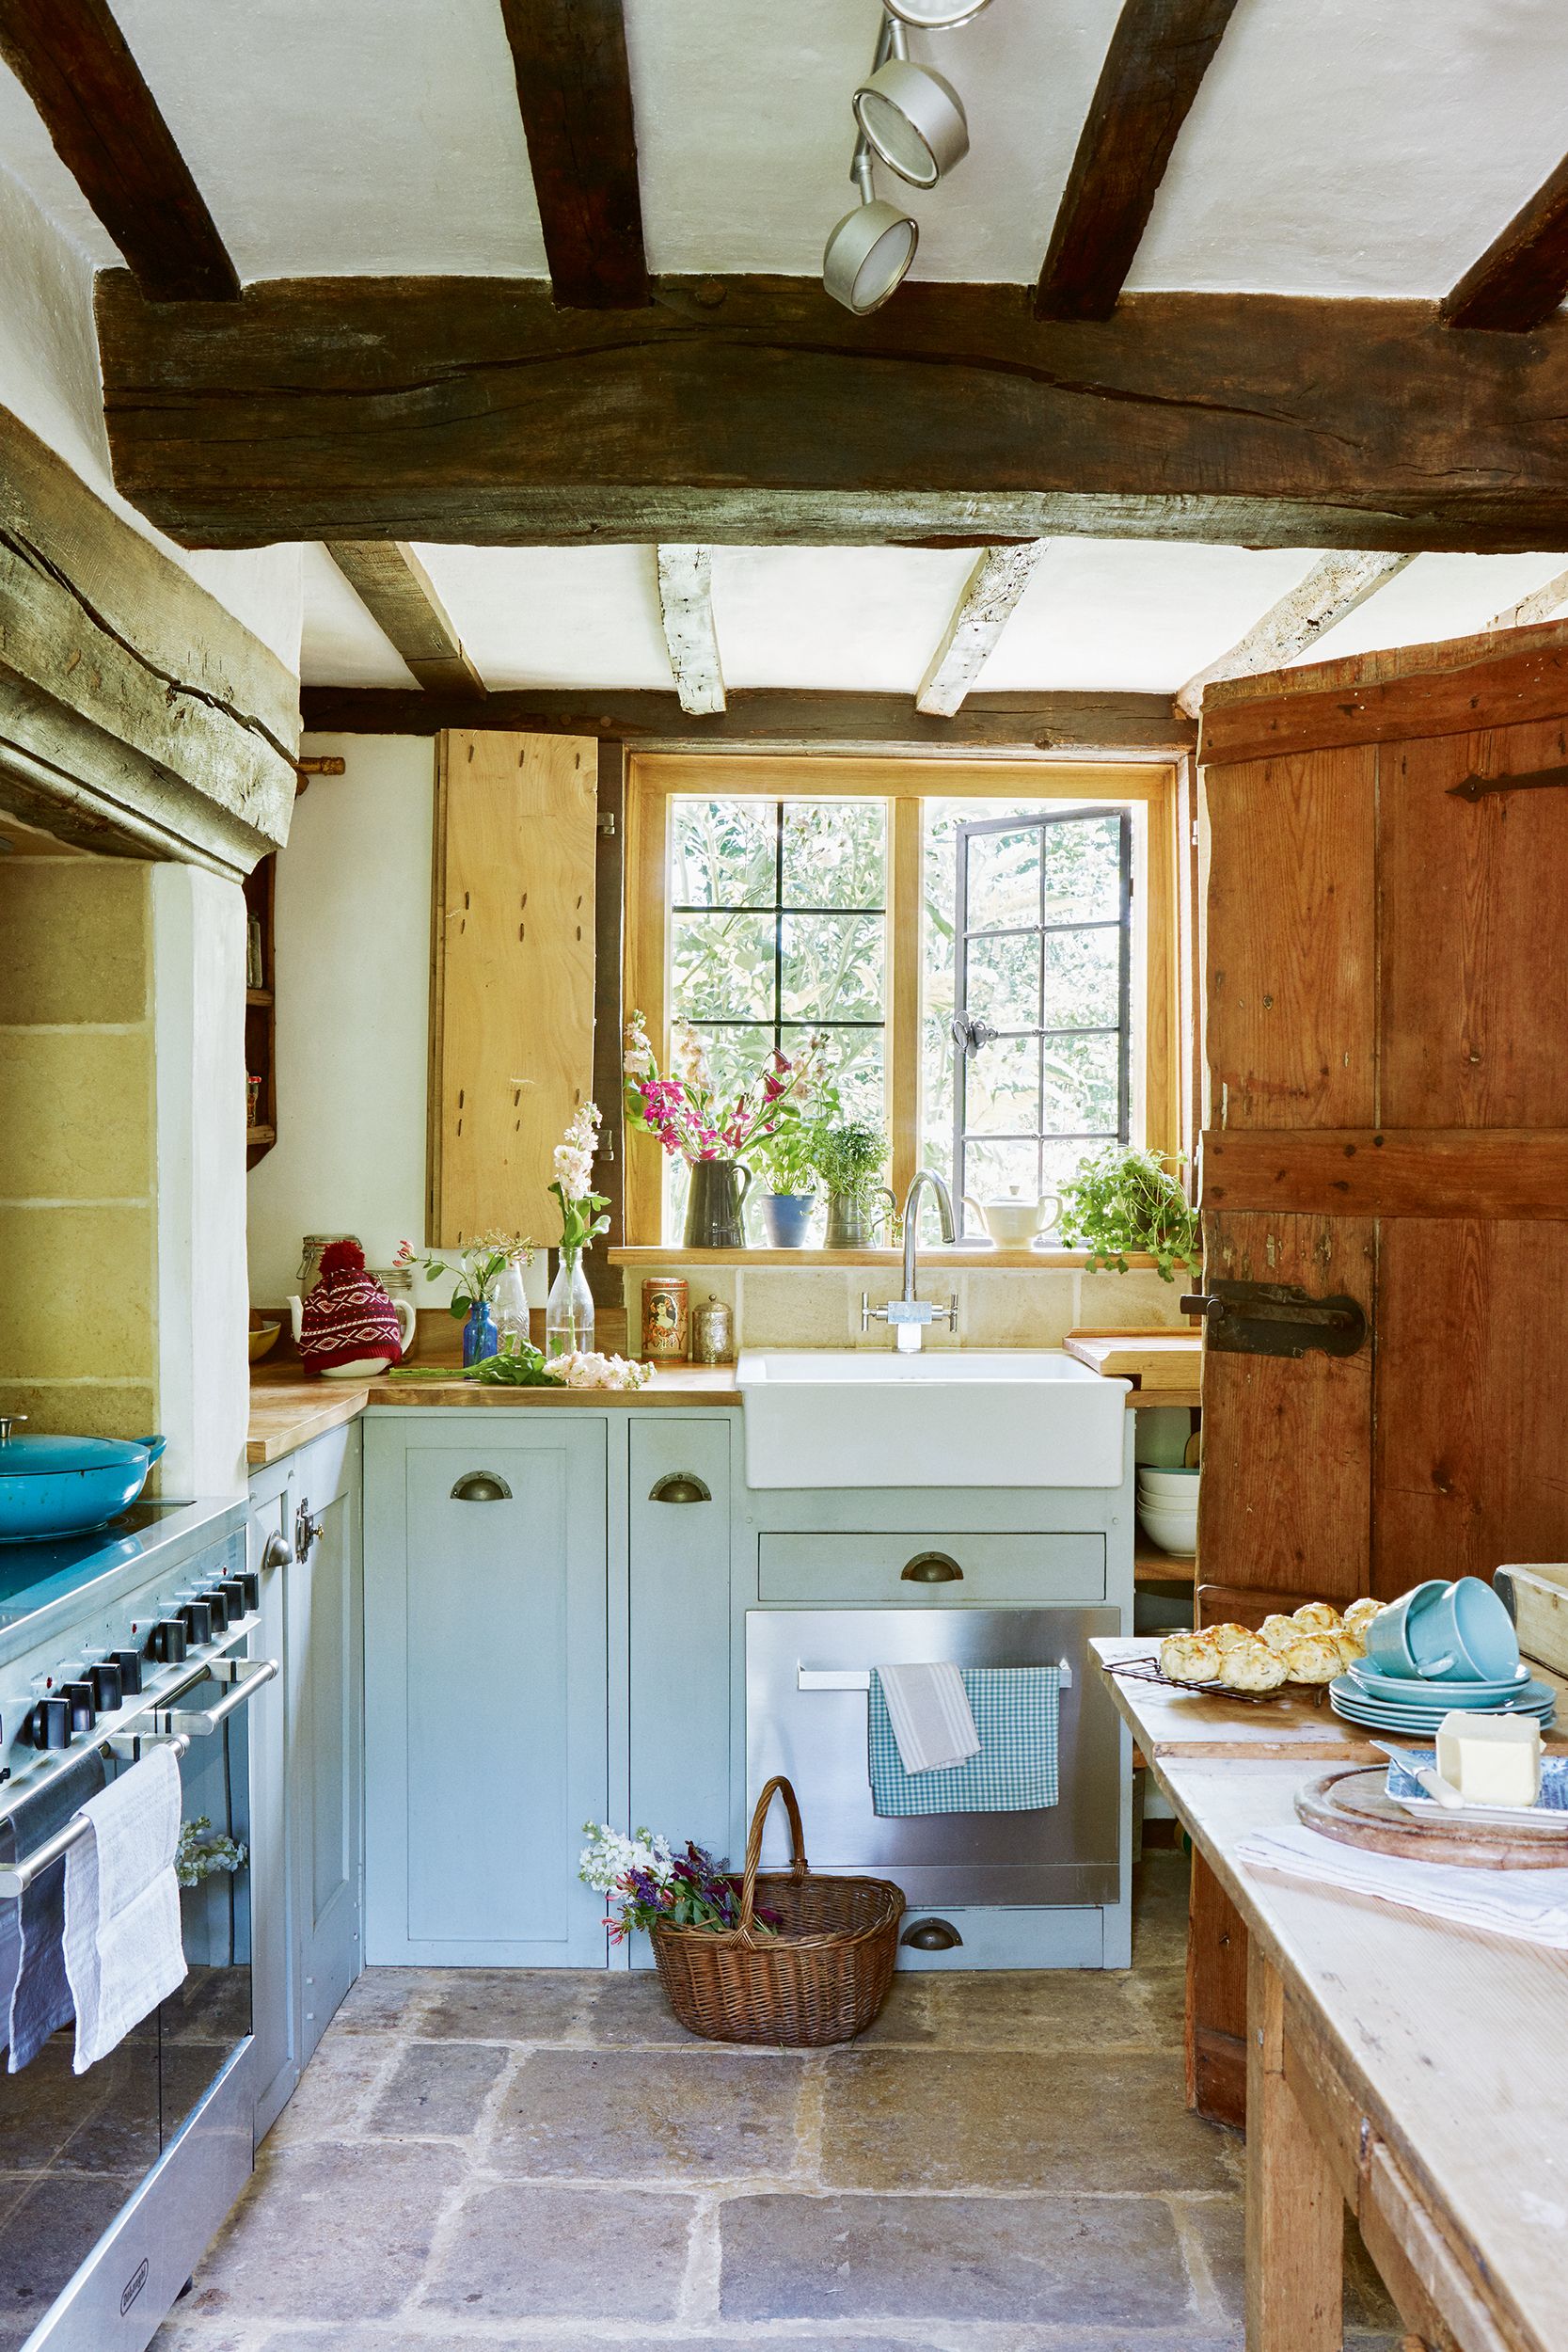 Teal cucina in un cottage di campagna casa